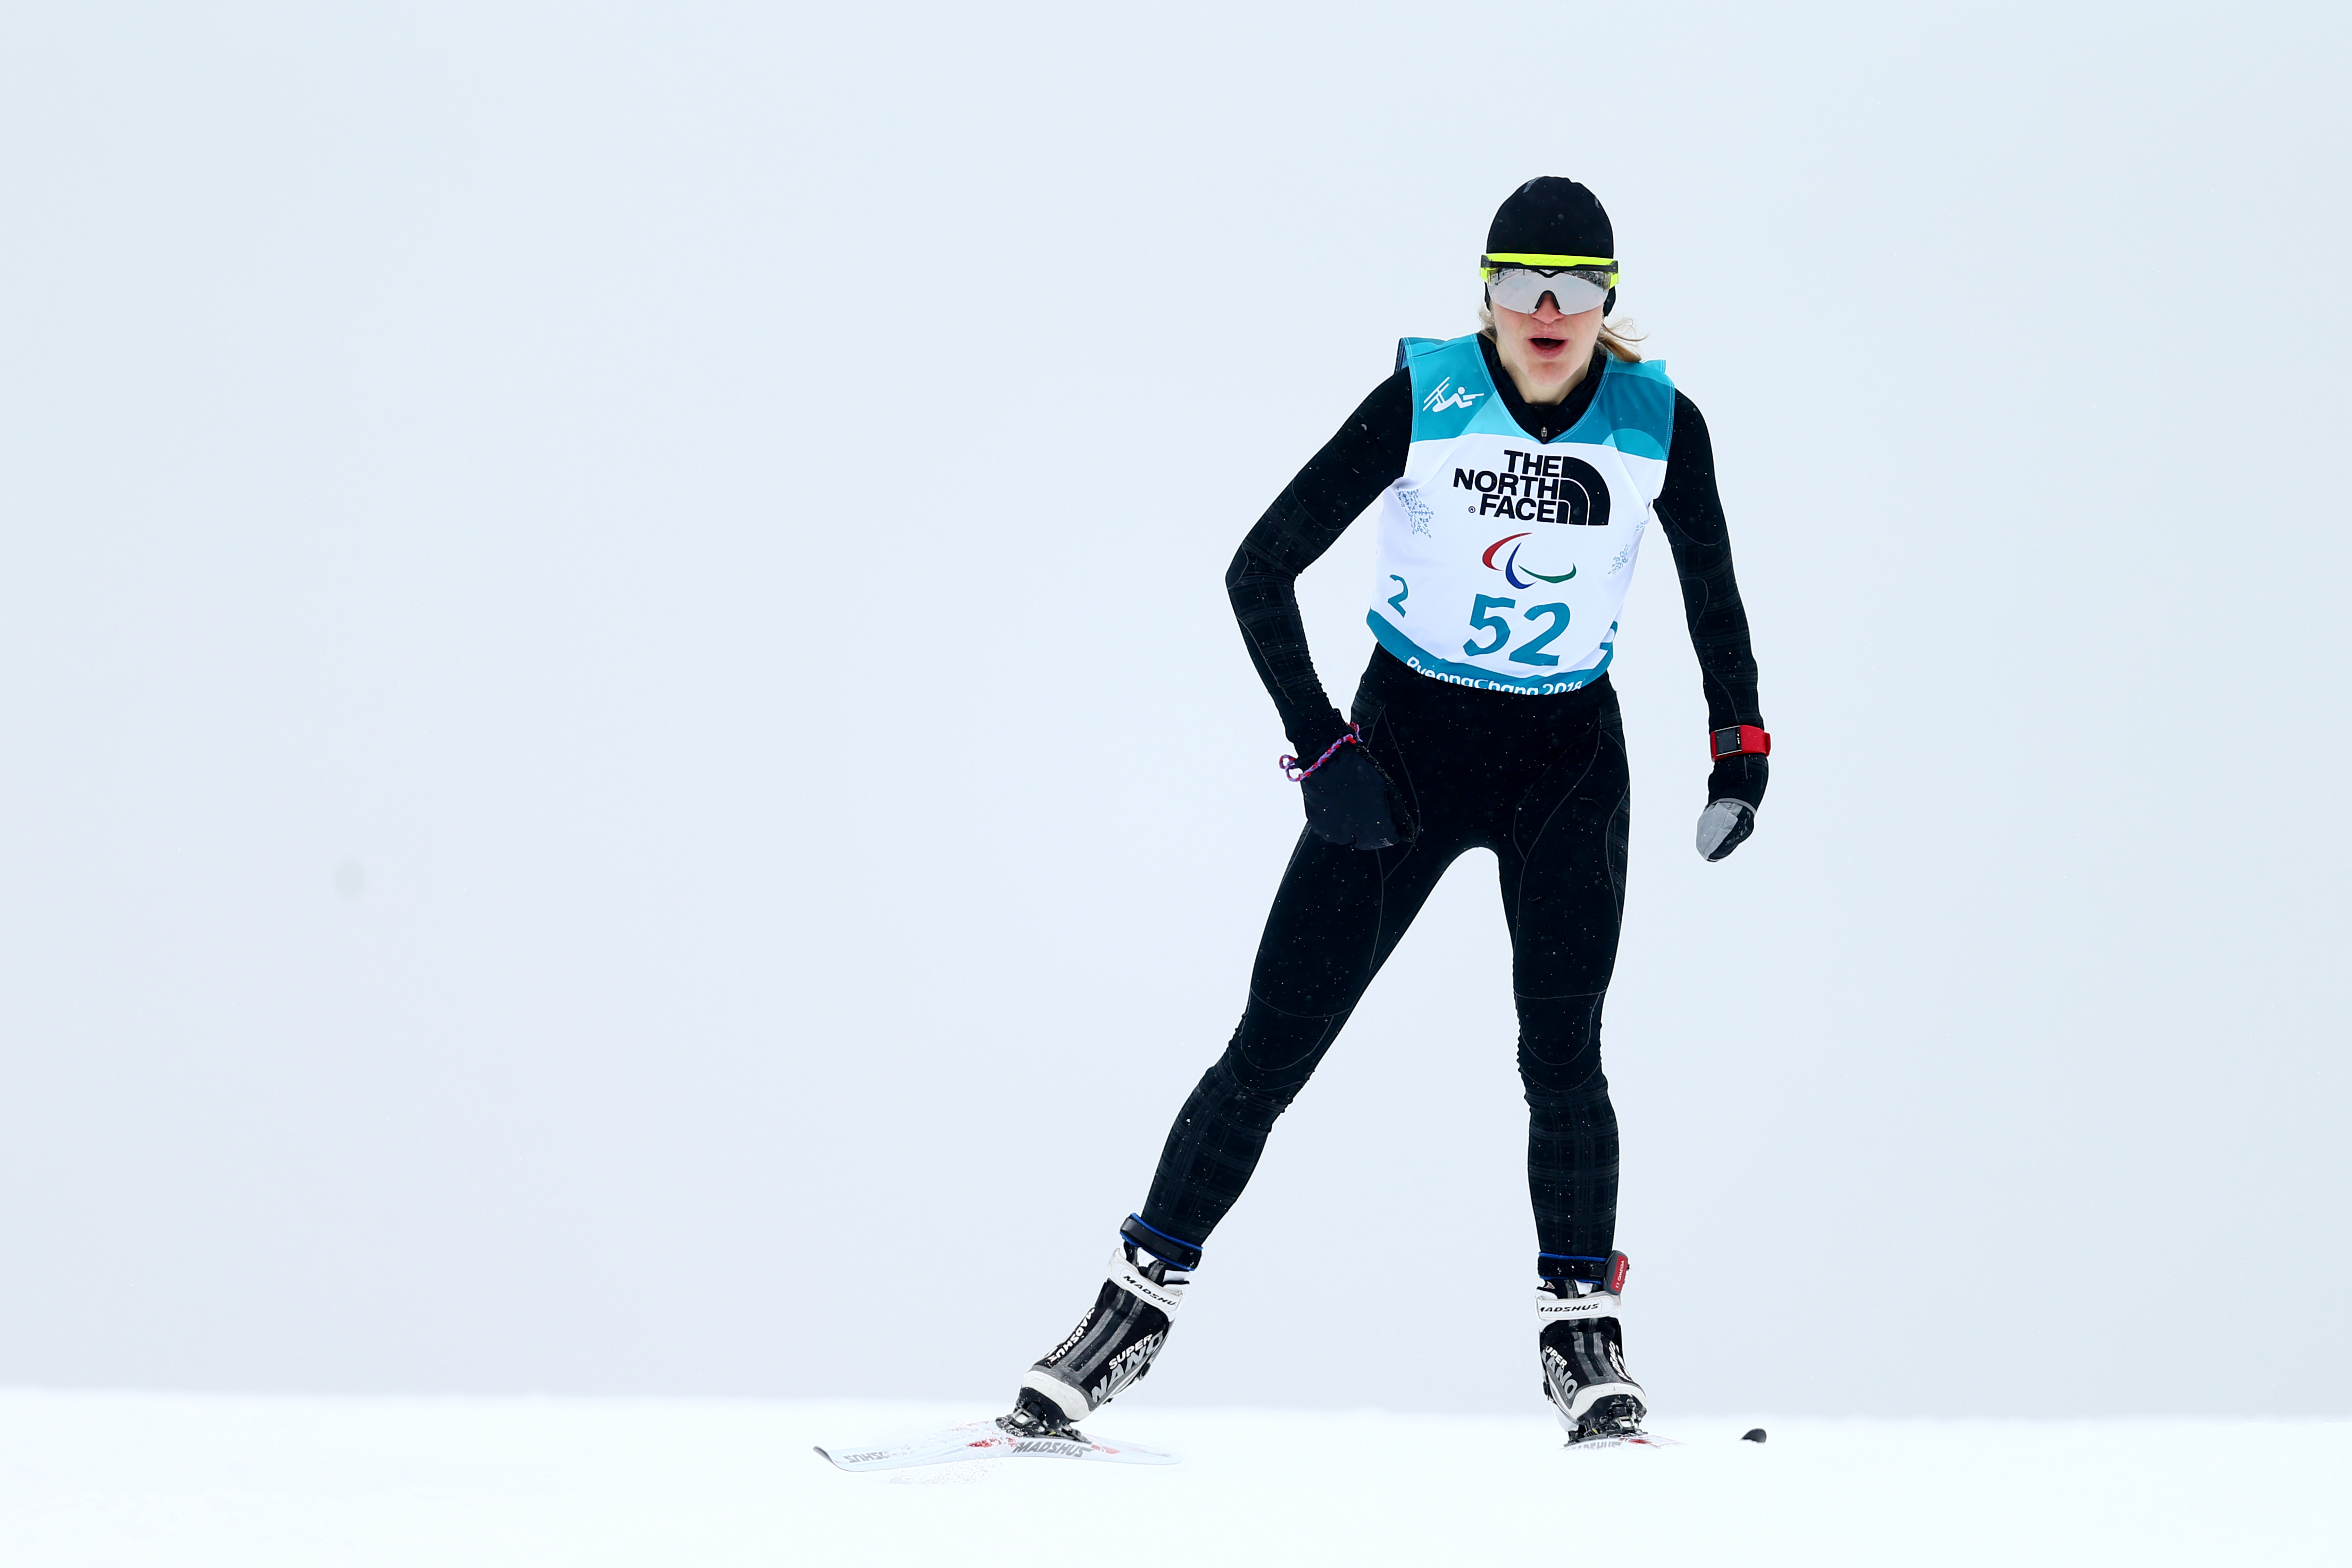 PyeongChang 2018: Top 5 biathlon moments